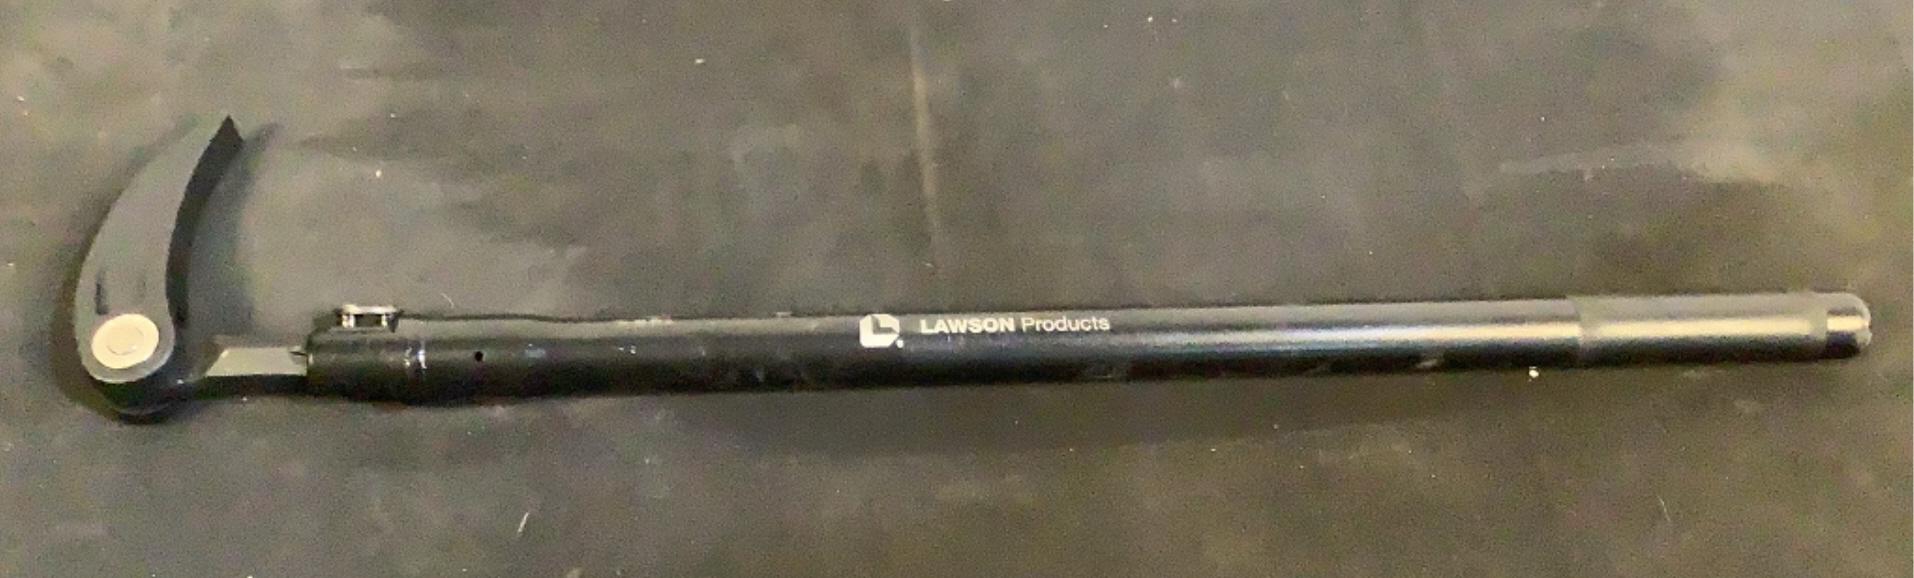 (4) Lawson XL Pry Bars DY89320018